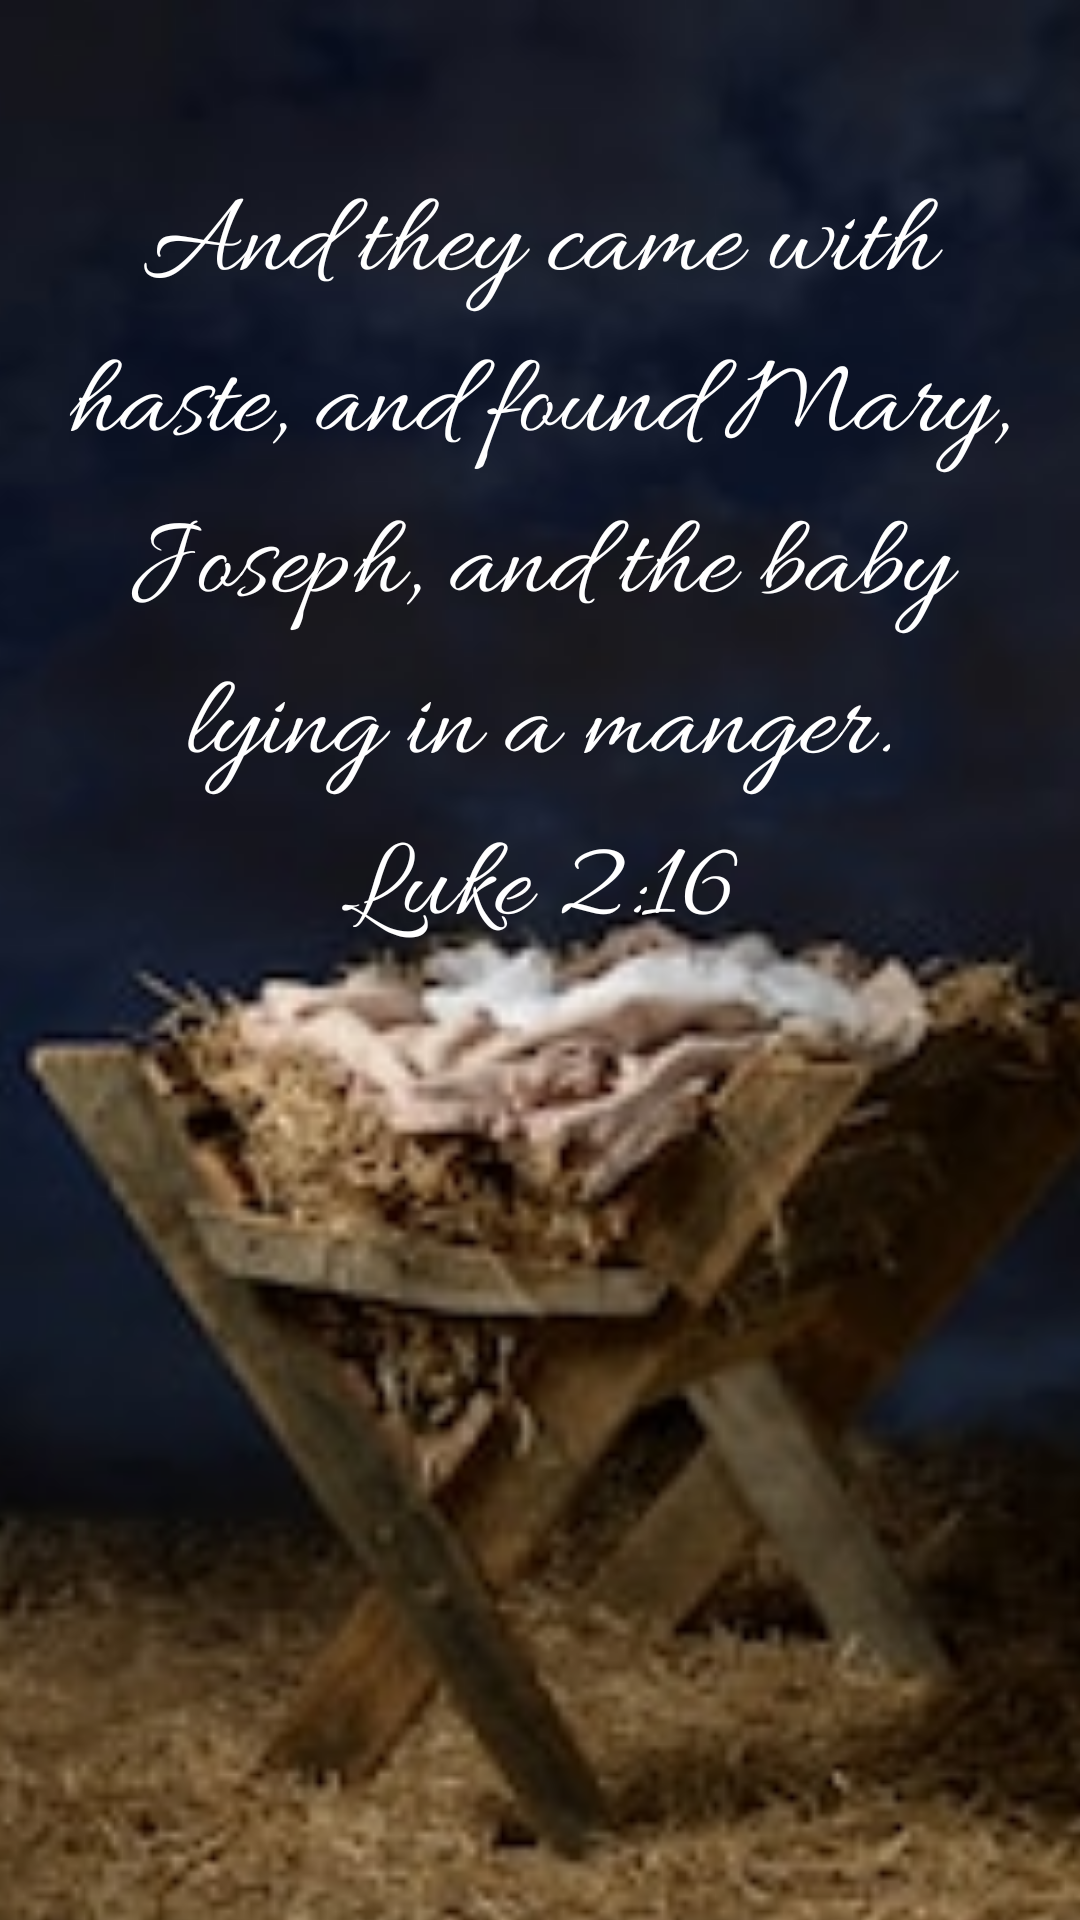 Luke 2:16